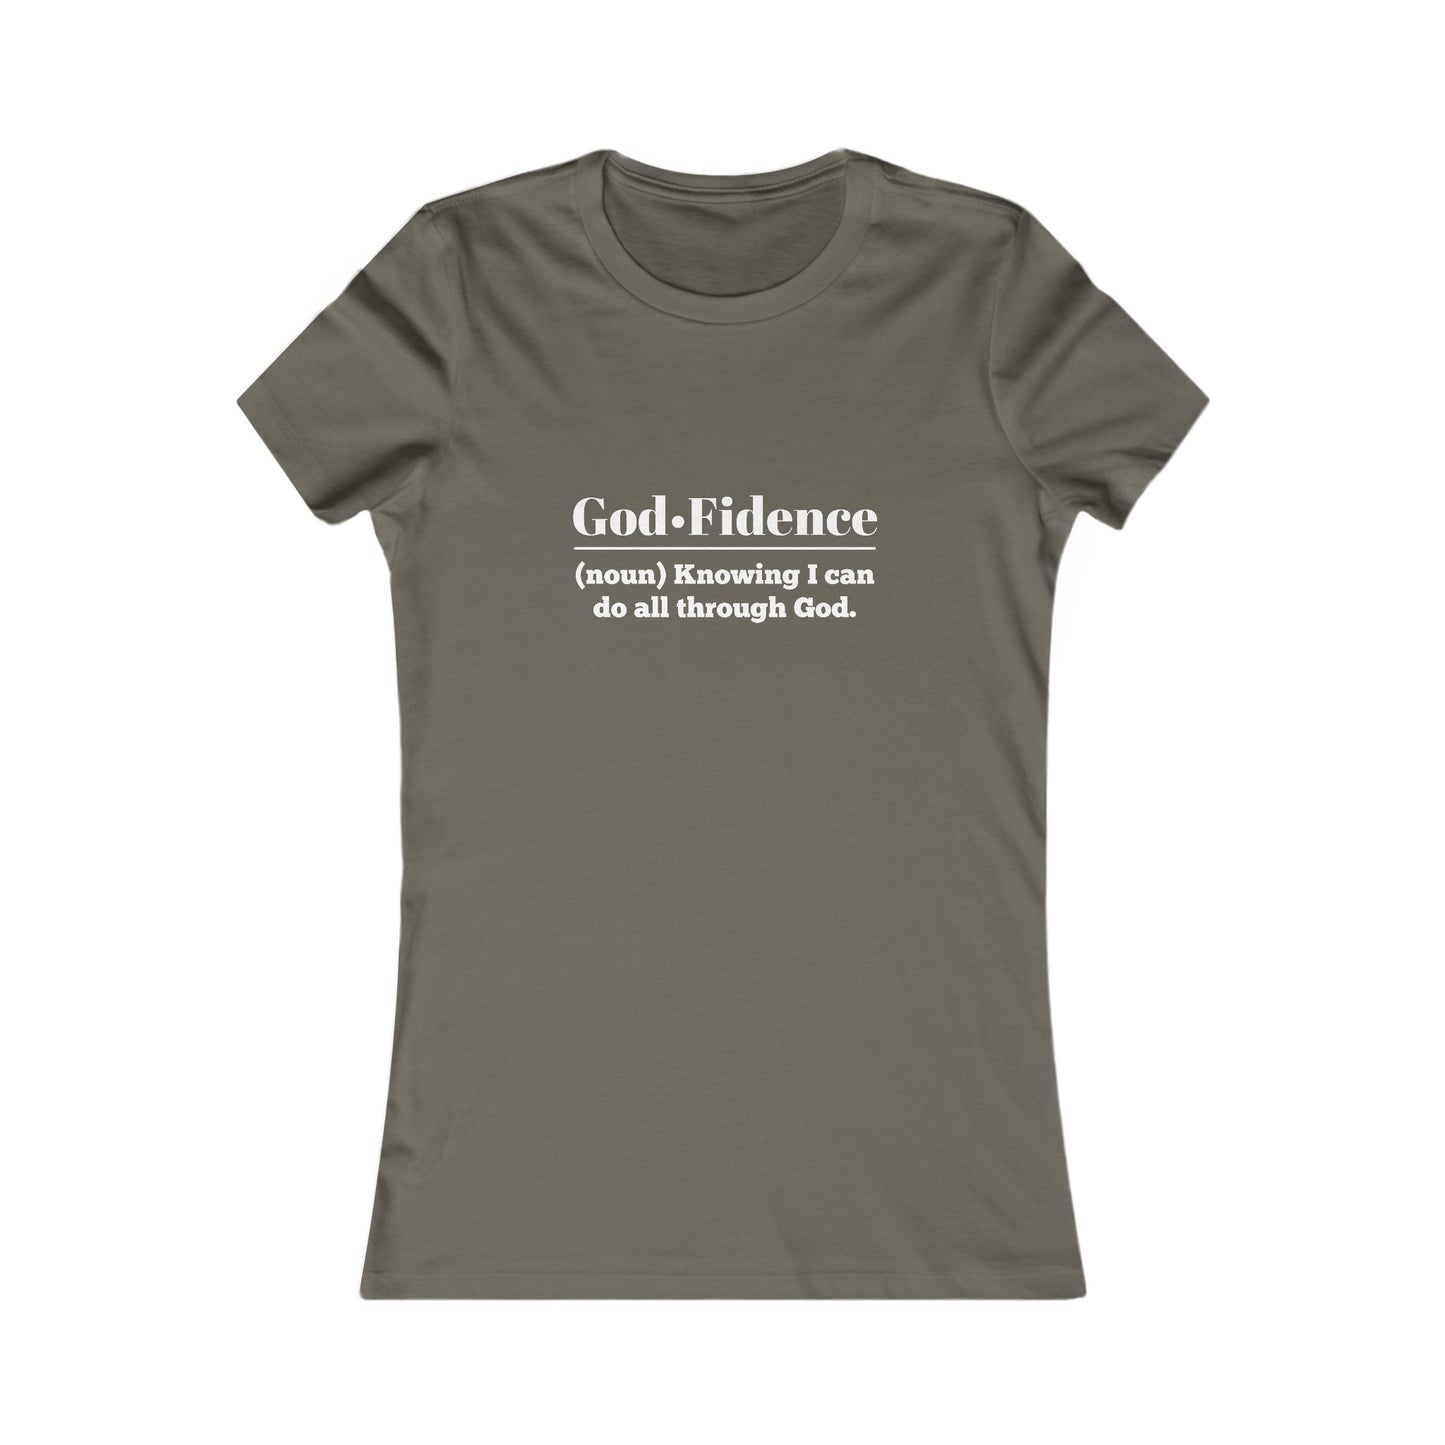 God-fidence Women's Fitted Tshirt (White Logo)